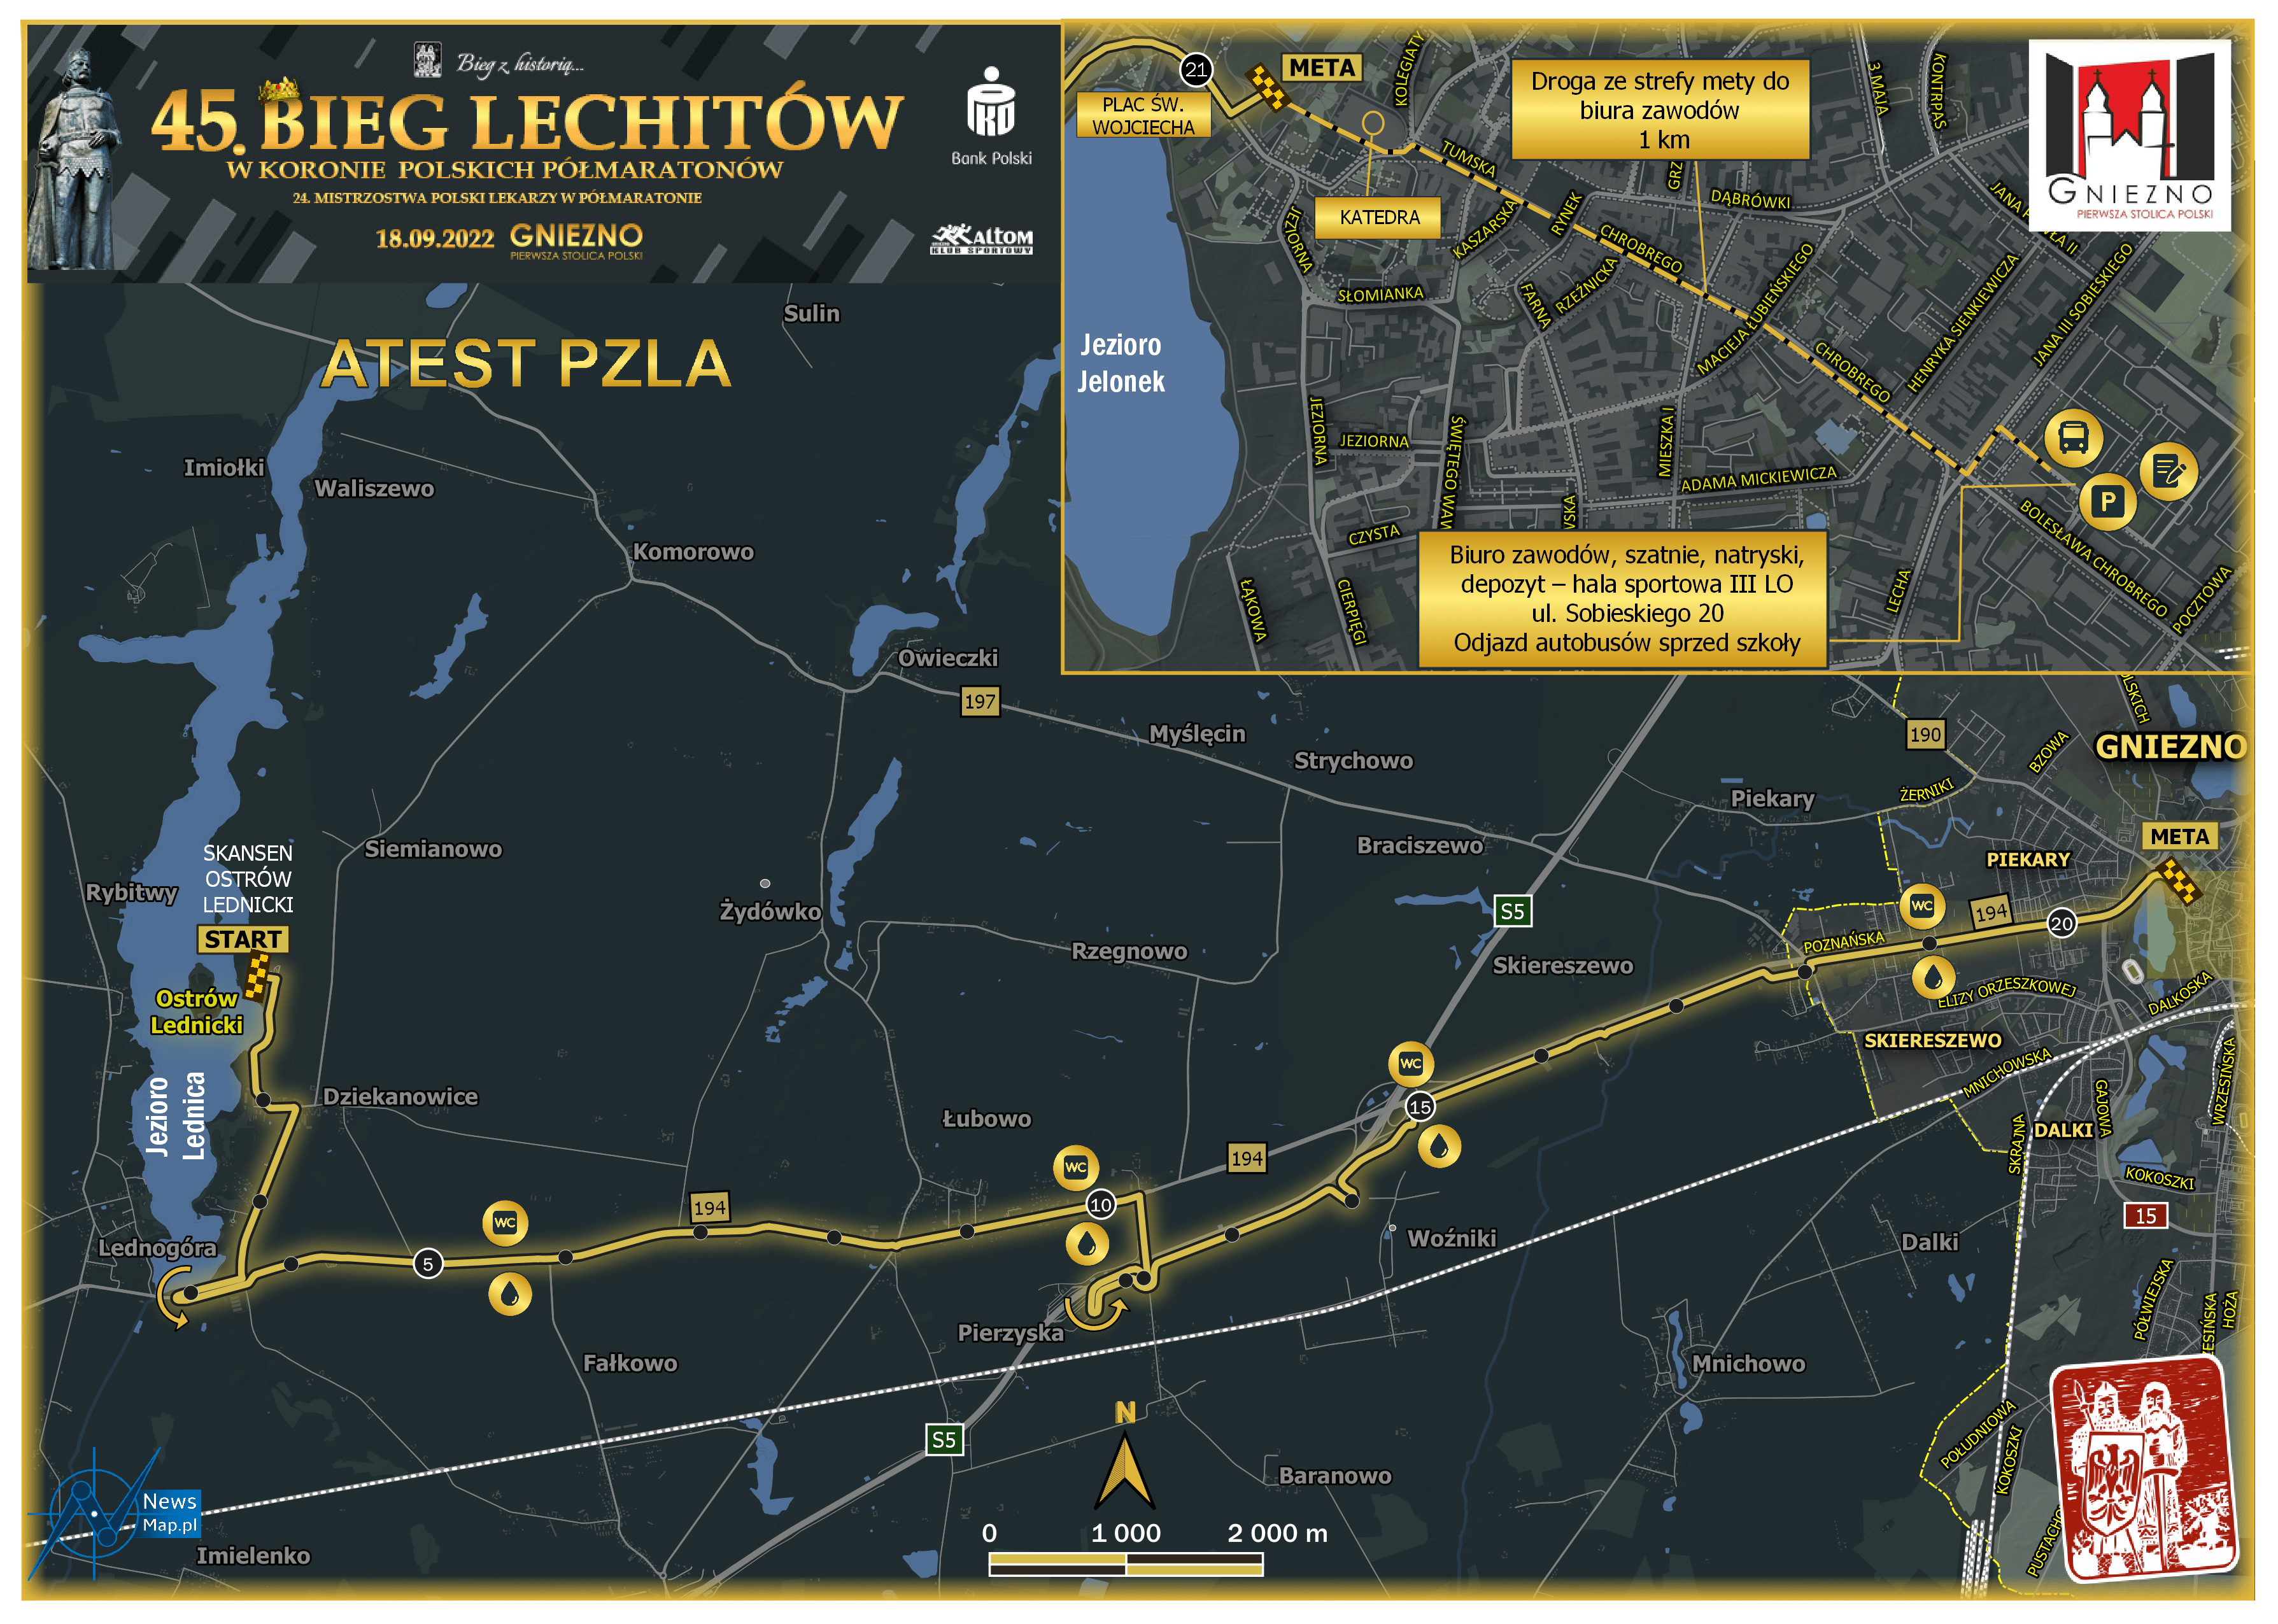 Mapa-statyczna-Bieg-Lechitów-2022-zmiana-trasy-on-linev2 (1)